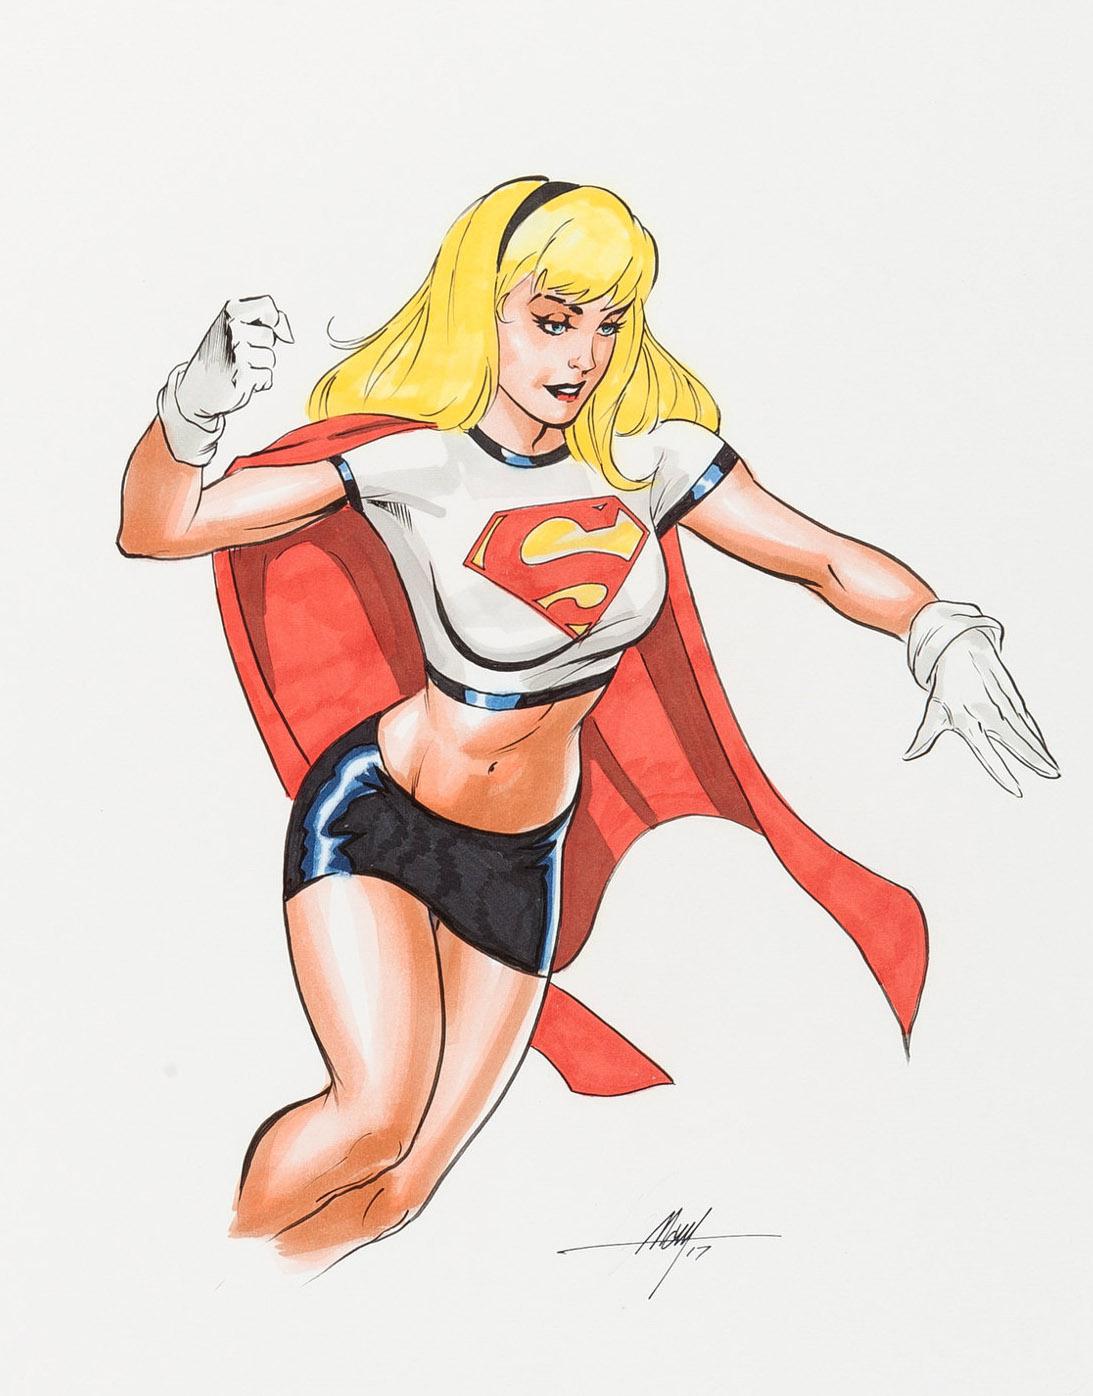 d6f23i-Supergirl_Peter_David_s_run__by_MC_Wyman.-7pp1fgylckn31.jpg